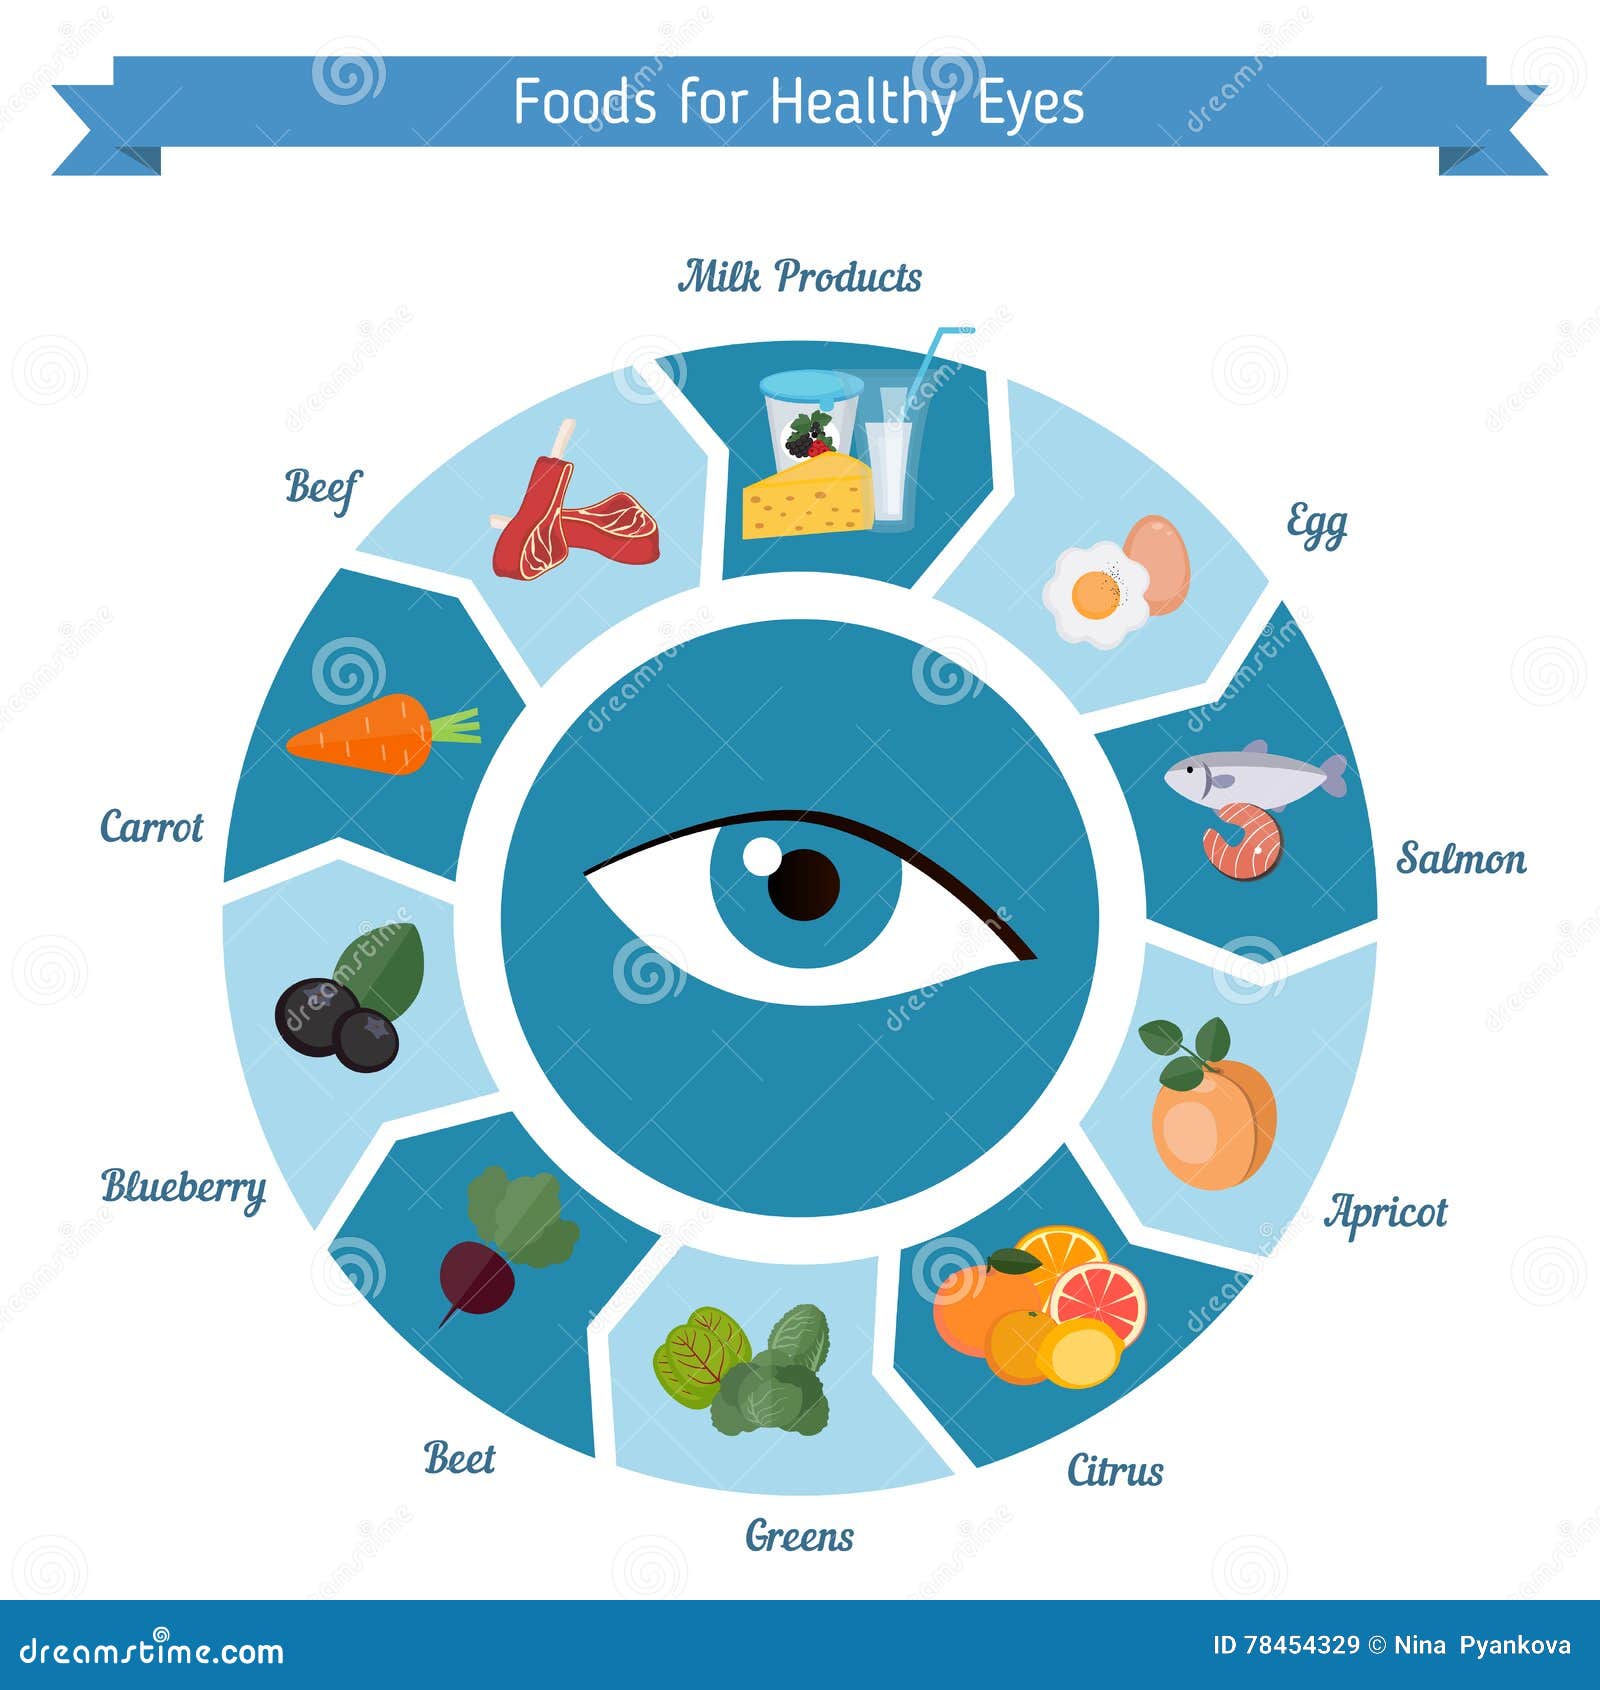 Что есть для глаз и зрения. Питание для зрения. Продукты полезные для глаз. Полезная еда для зрения. Что полезно для глаз и зрения.